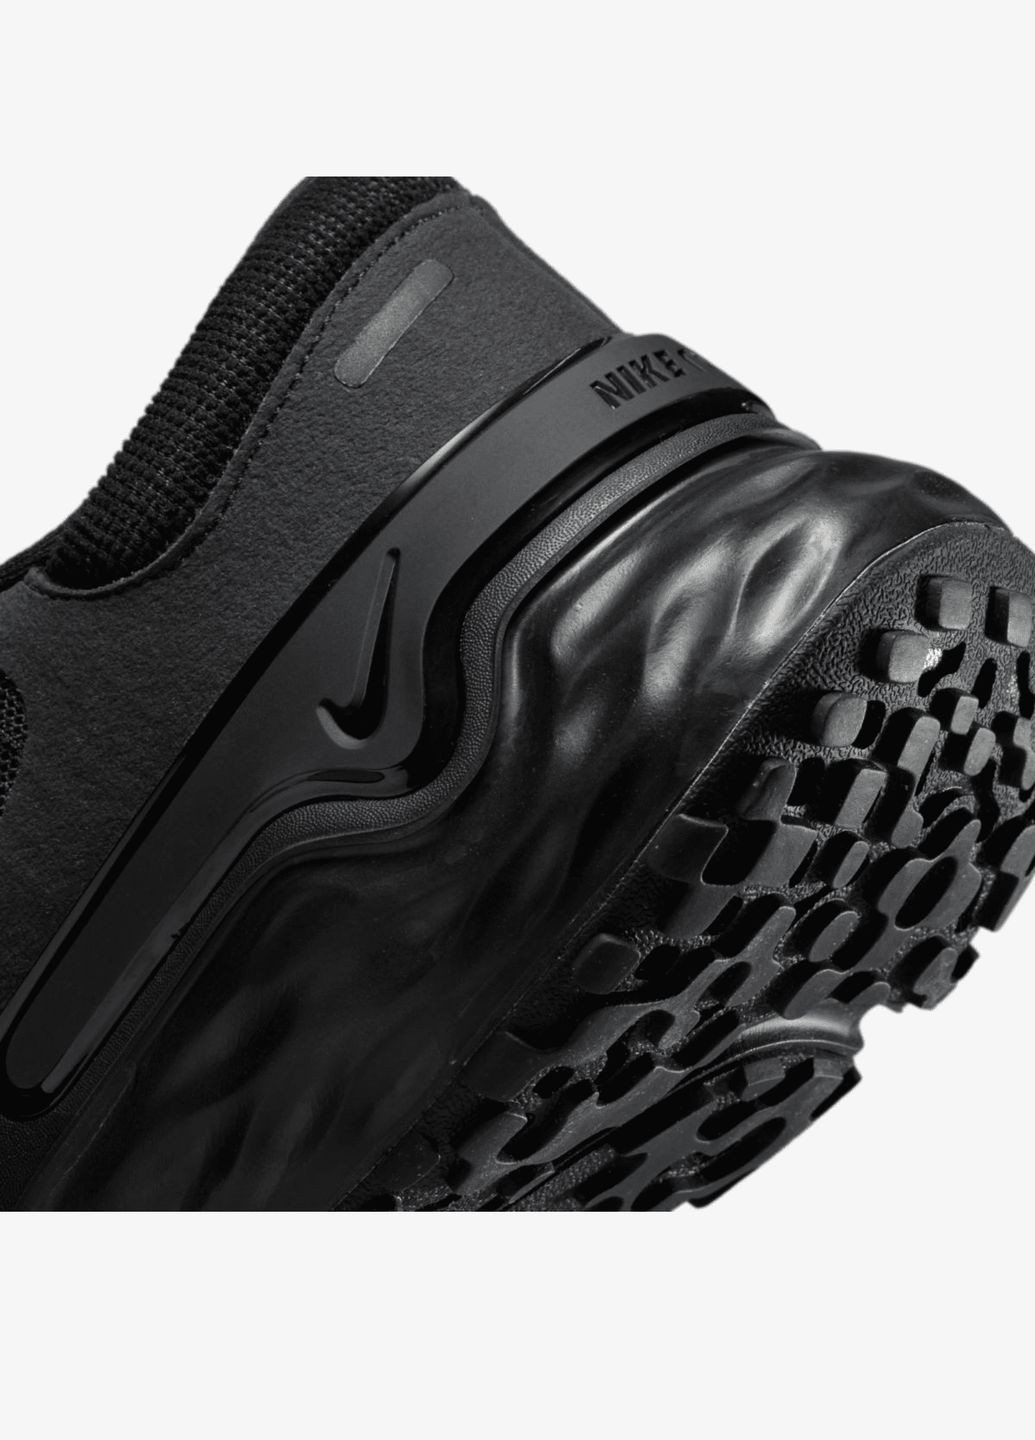 Чорні всесезон кросівки чоловічі renew run 4 dr2677-001 літо текстиль сітка чорні Nike